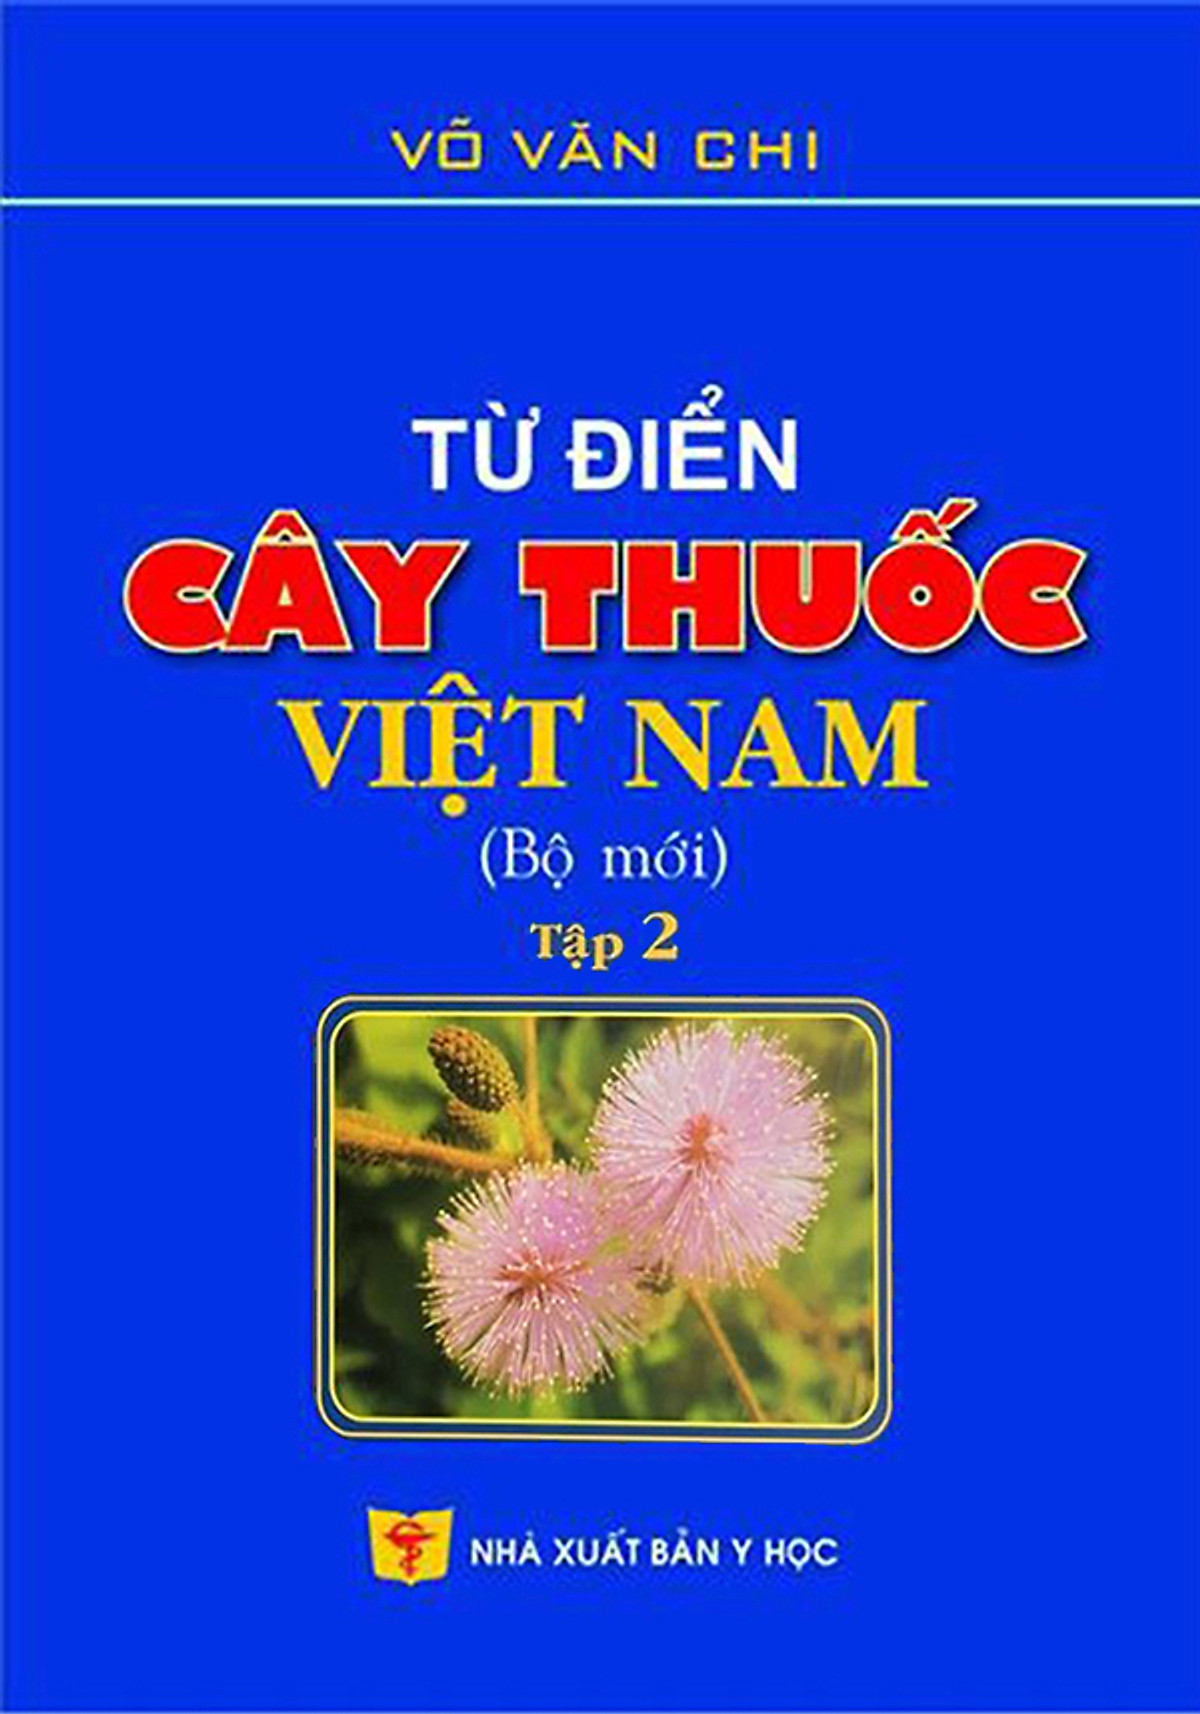 Combo Sách Từ điển Cây thuốc Việt Nam (Tập 1 + 2)